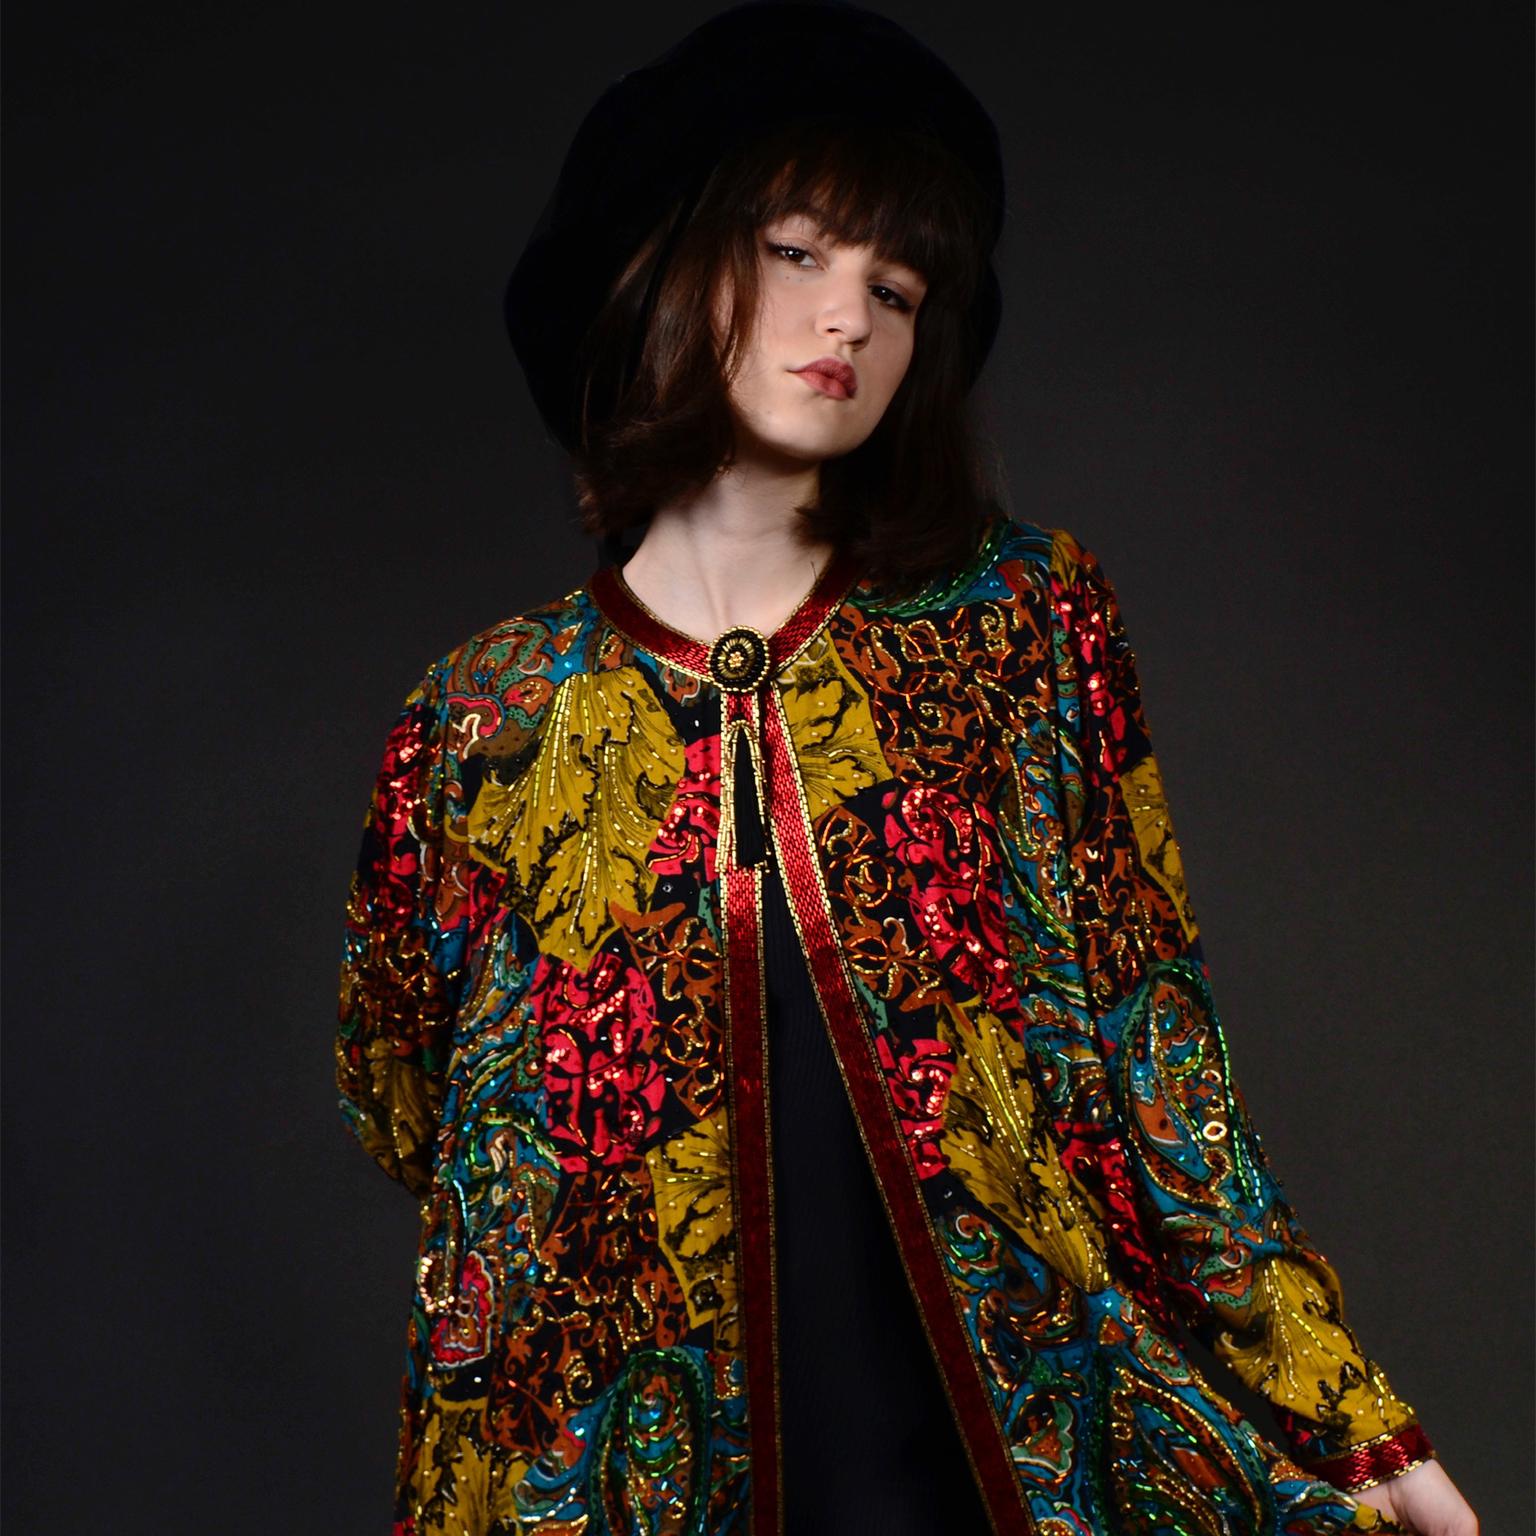 Vintage Diane Freis Beaded Sequin Swing Jacket in Multi Colored Baroque Print 11